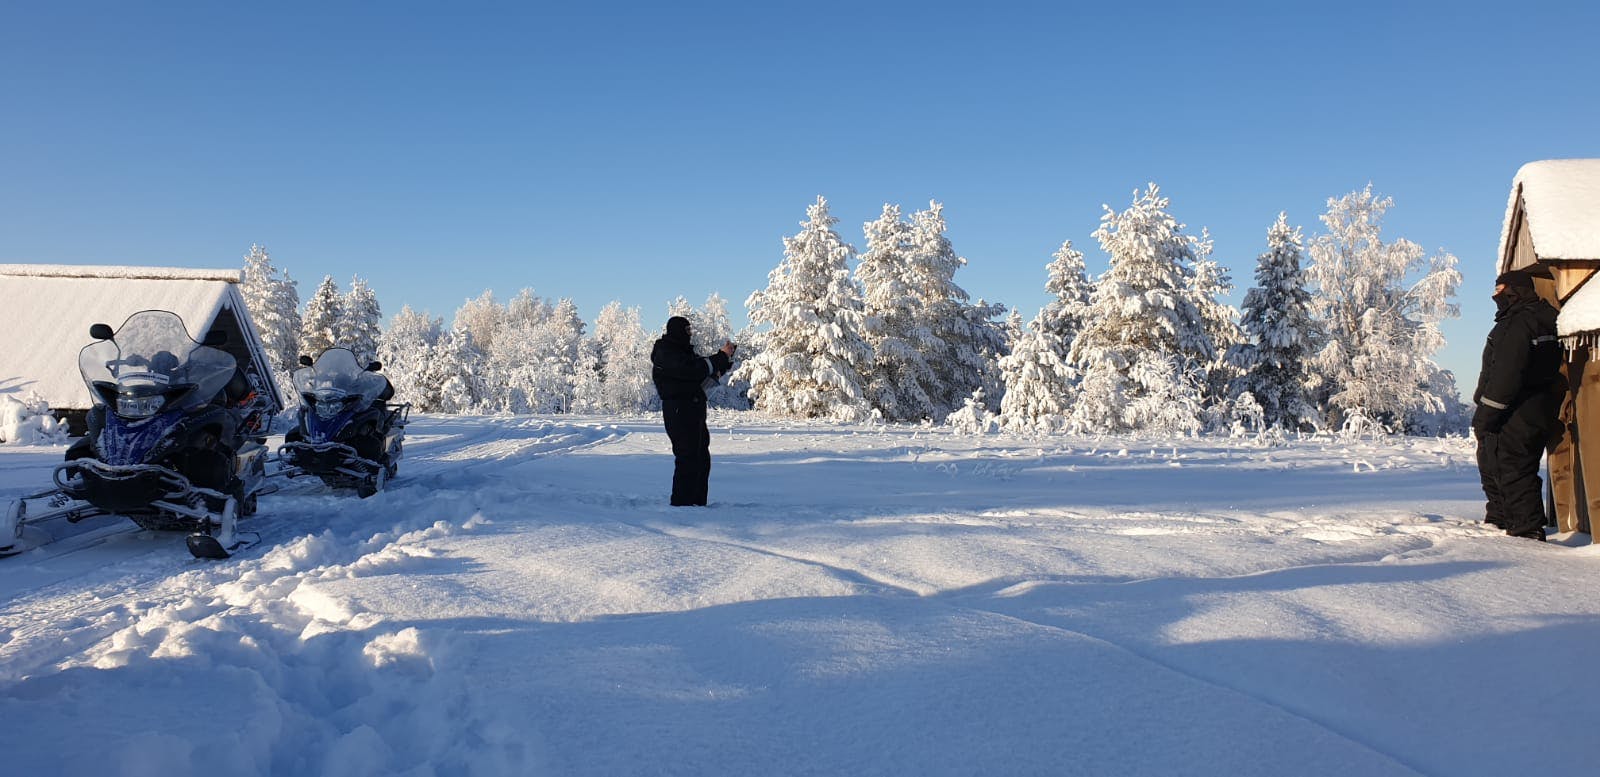 Longo safári de moto de neve (70 km) na Lapônia